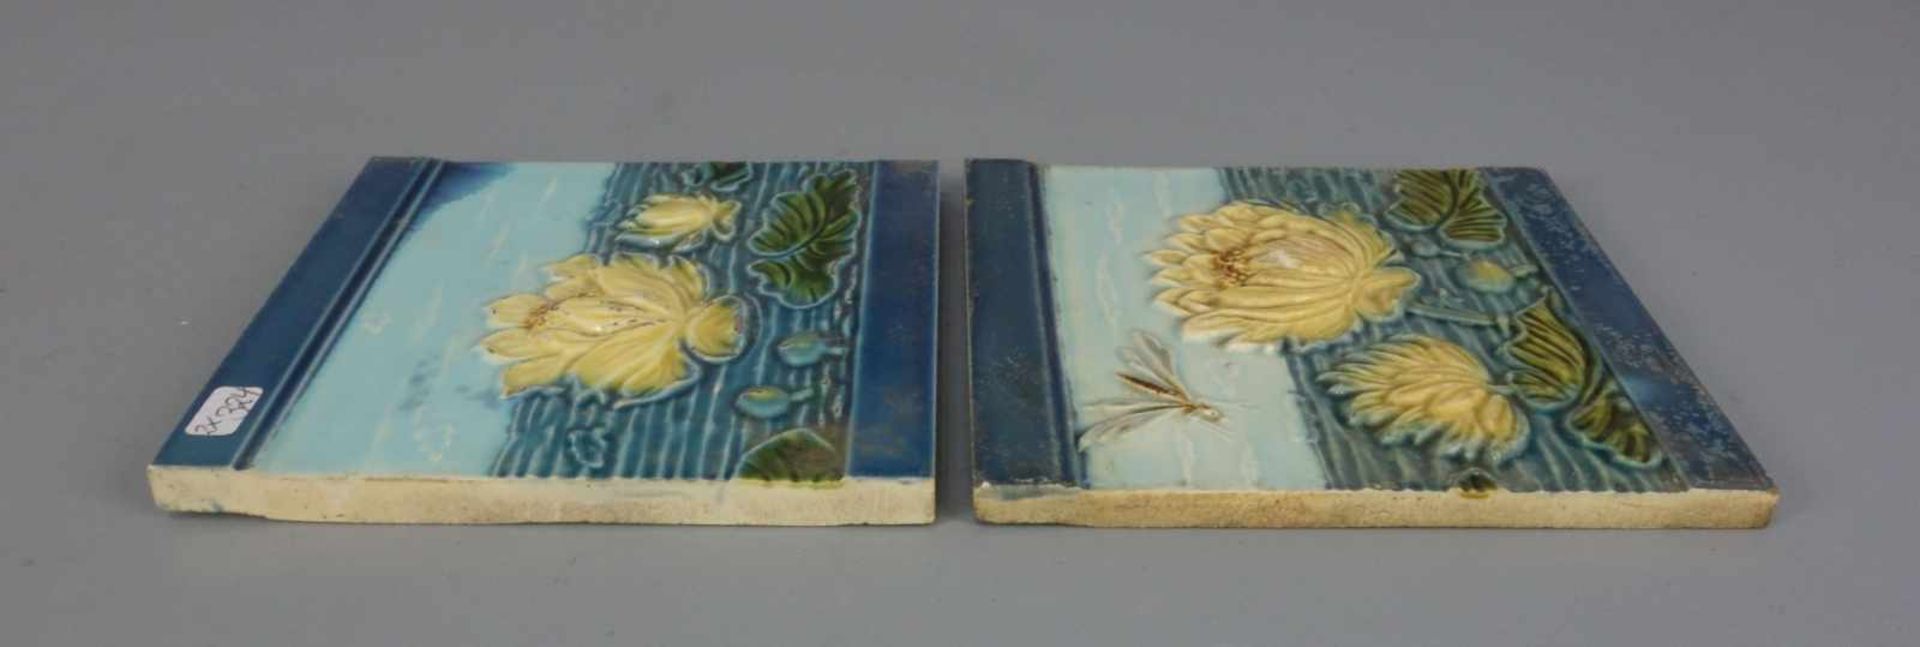 PAAR JUGENDSTIL - FLIESEN / two art nouveau tiles, heller Scherben, um 1900. Reliefdekor mit - Image 5 of 6